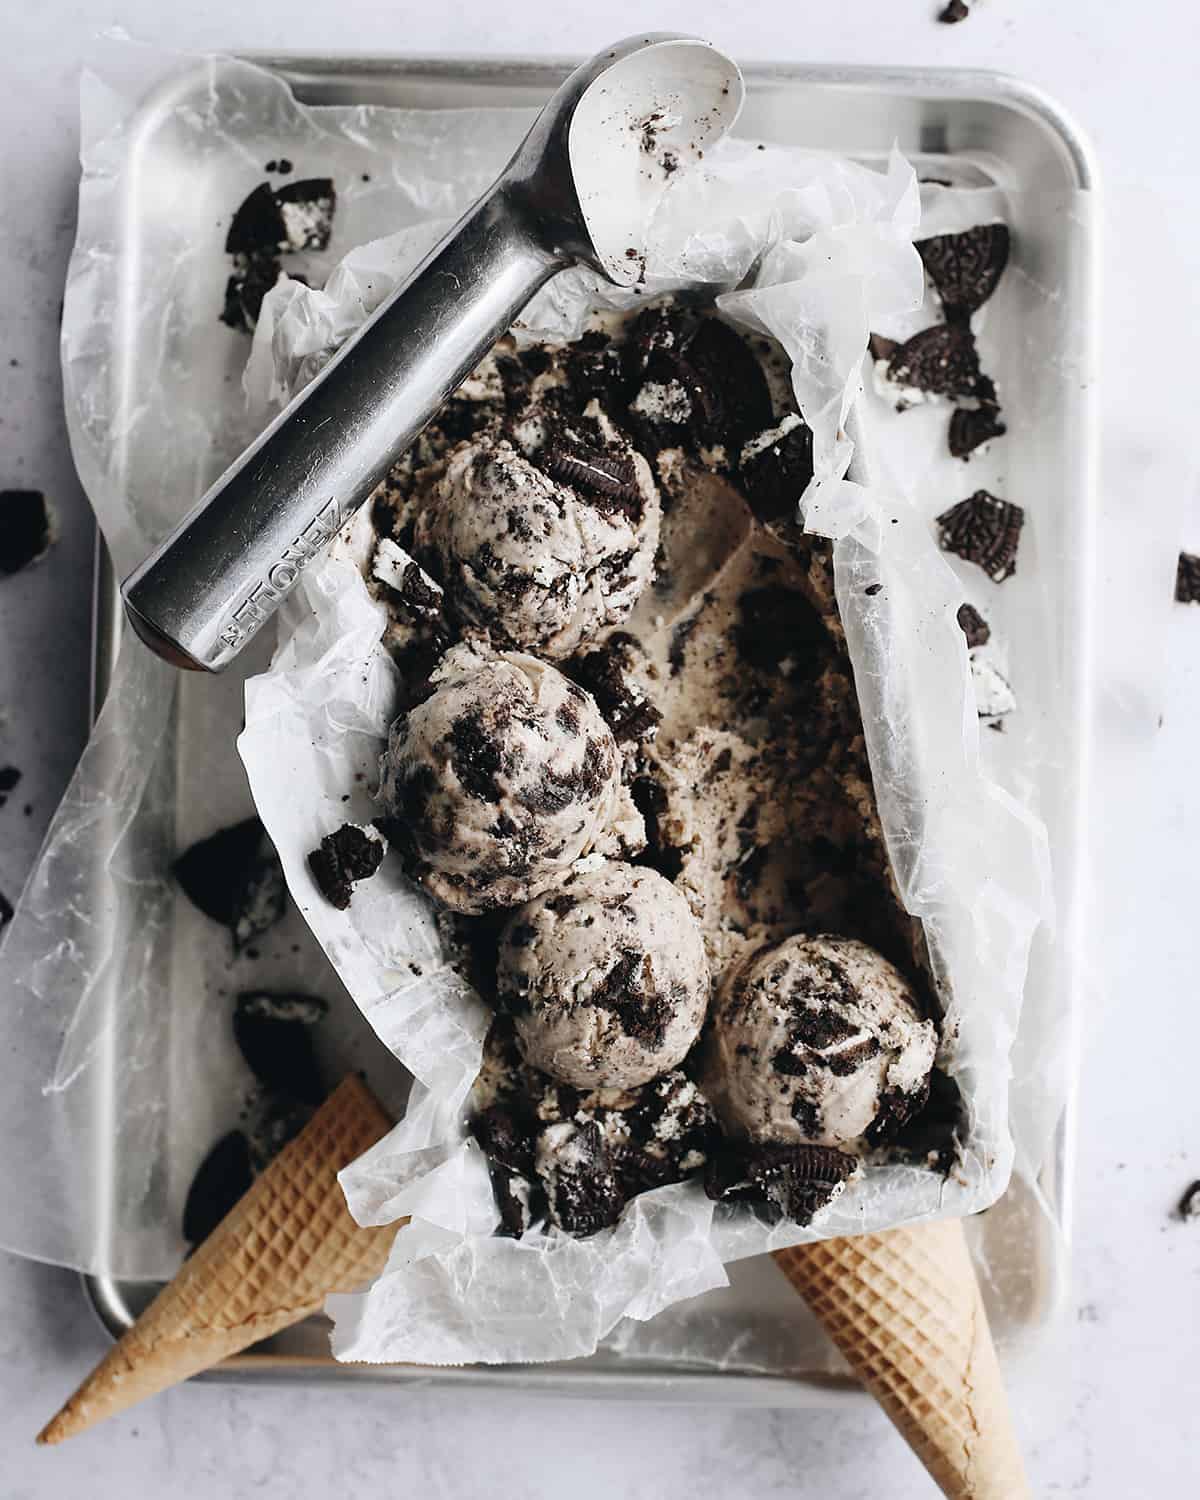 https://joyfoodsunshine.com/wp-content/uploads/2021/06/cookies-and-cream-oreo-ice-cream-2.jpg